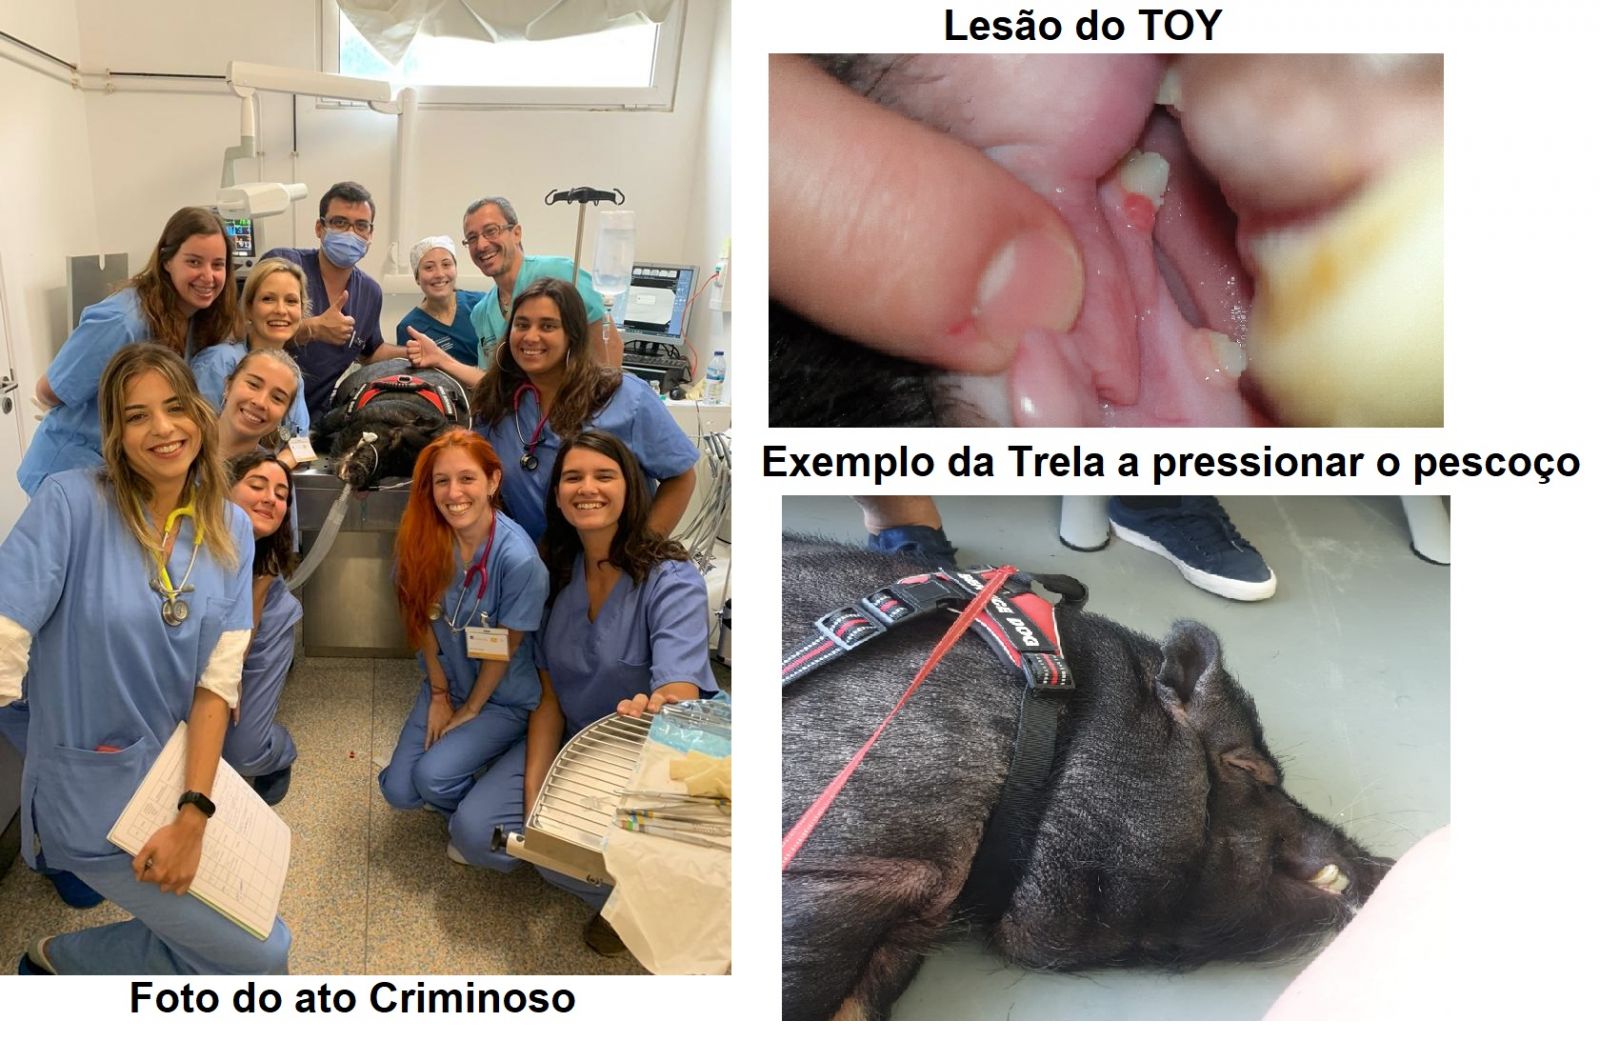 Faculdade de Medicina Veterinária da Universidade Lusófona - Morte de um animal doméstico, por causa de uma experiência